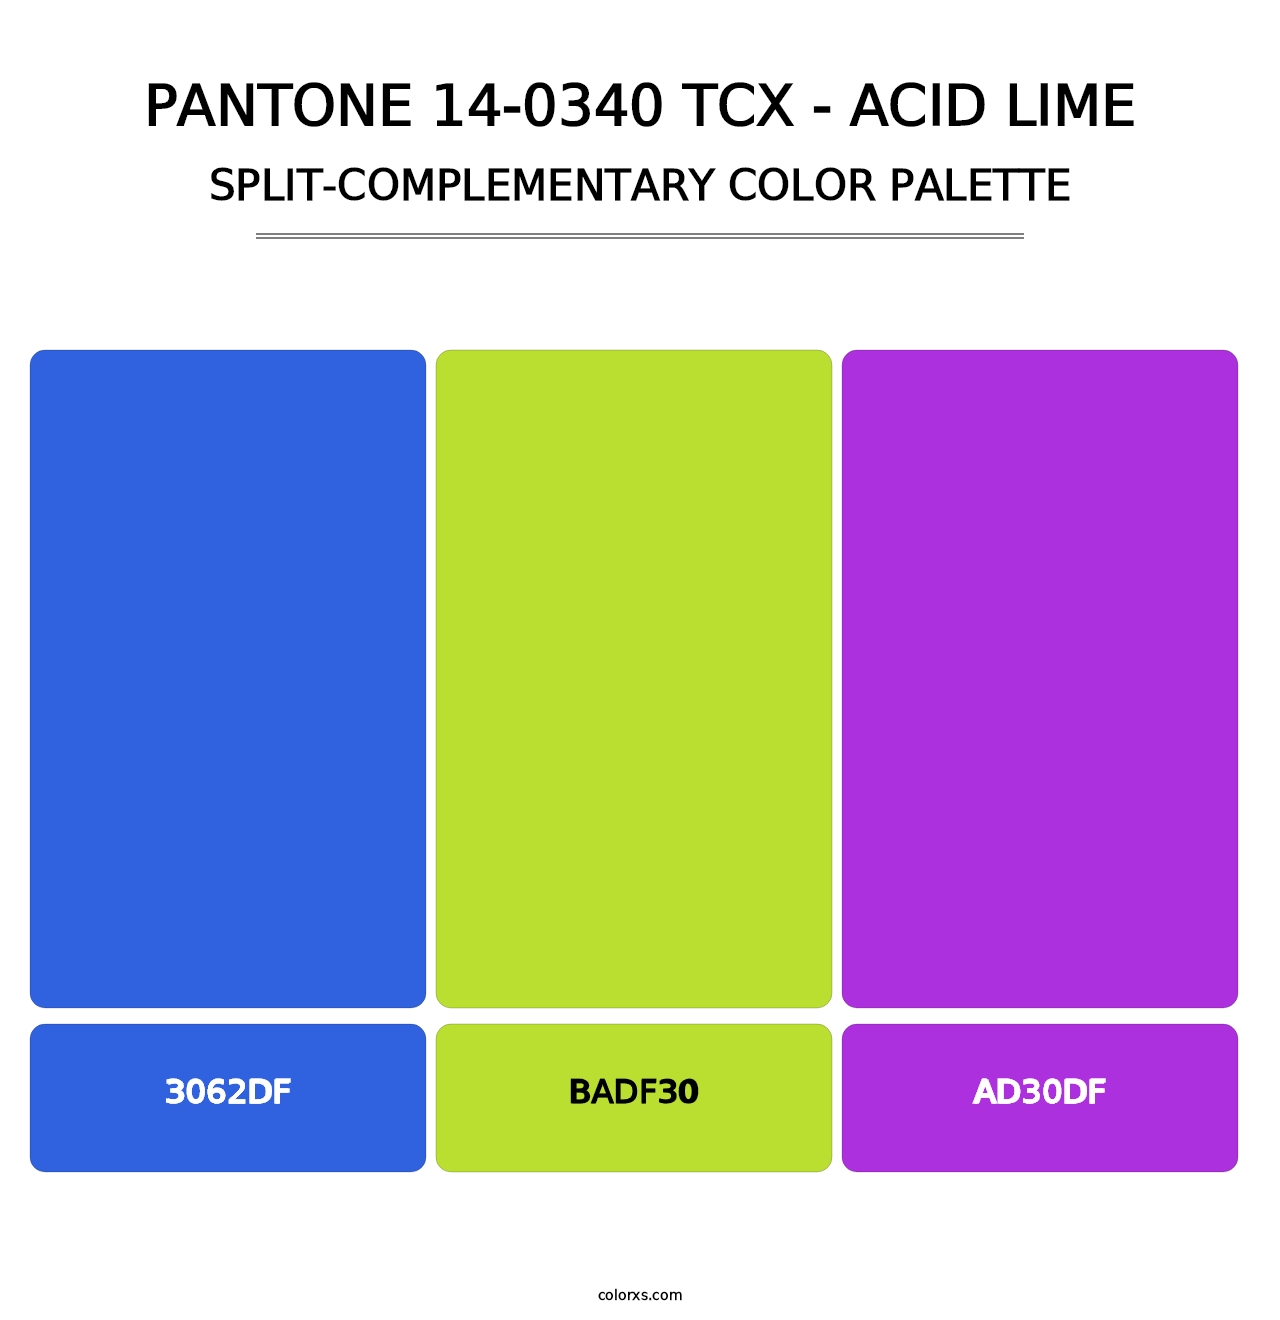 PANTONE 14-0340 TCX - Acid Lime - Split-Complementary Color Palette